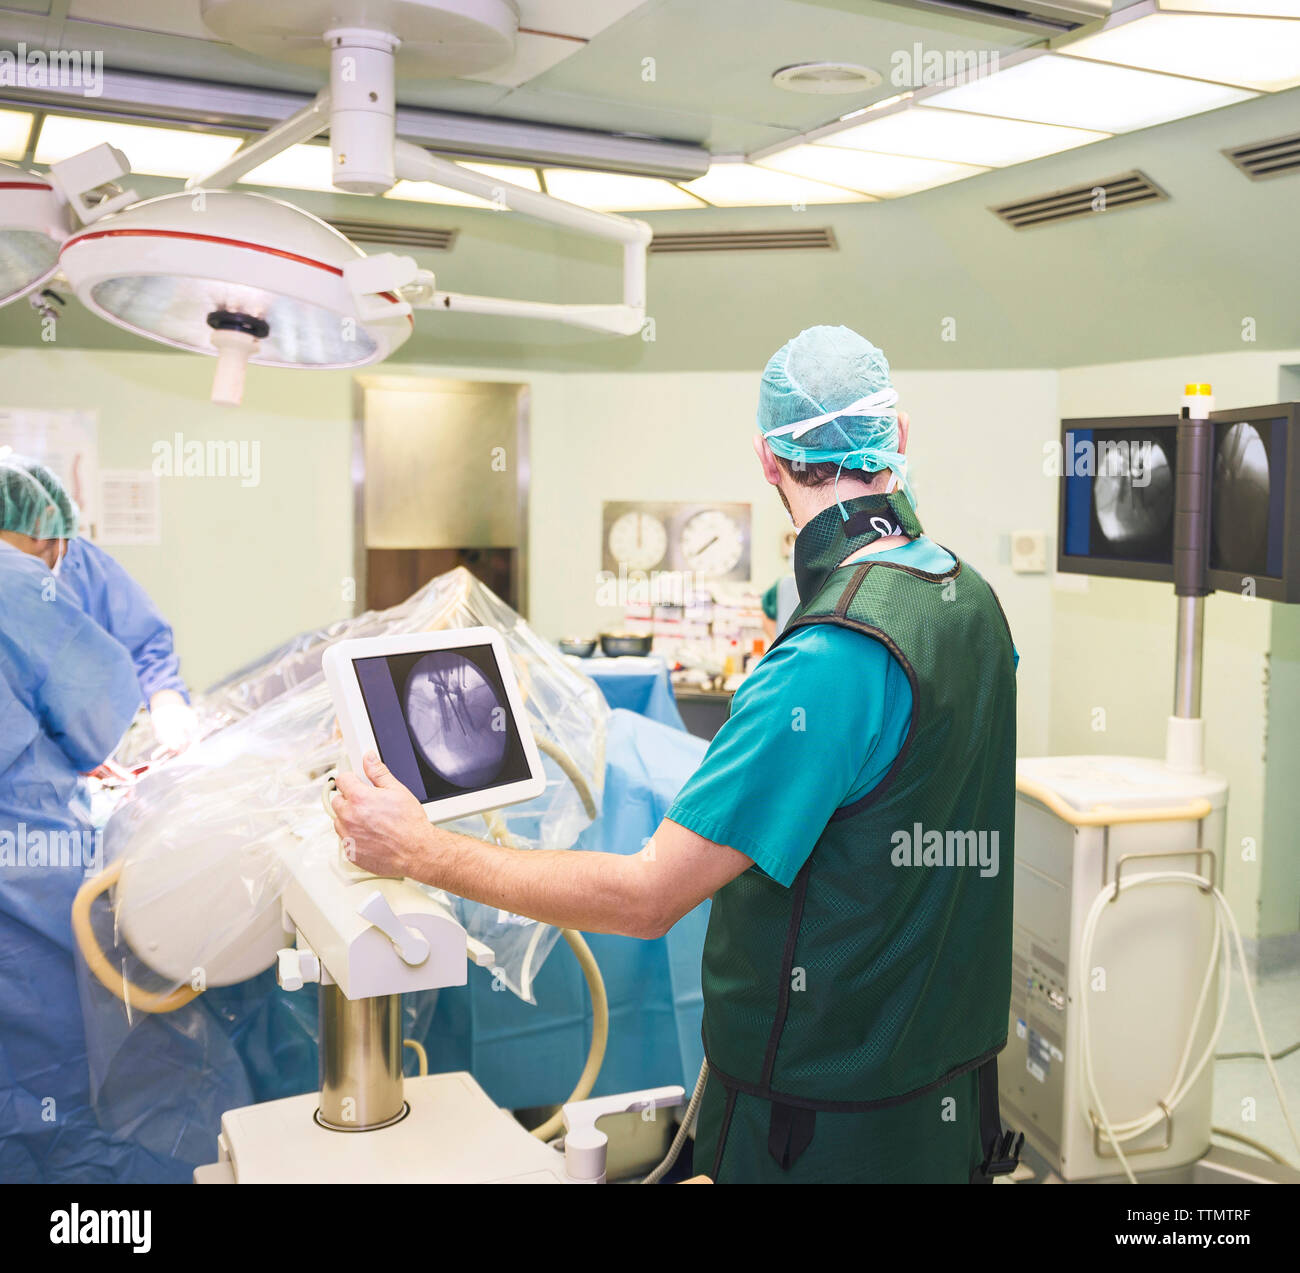 Vista trasera del cirujano con compañeros de trabajo en el quirófano Foto de stock